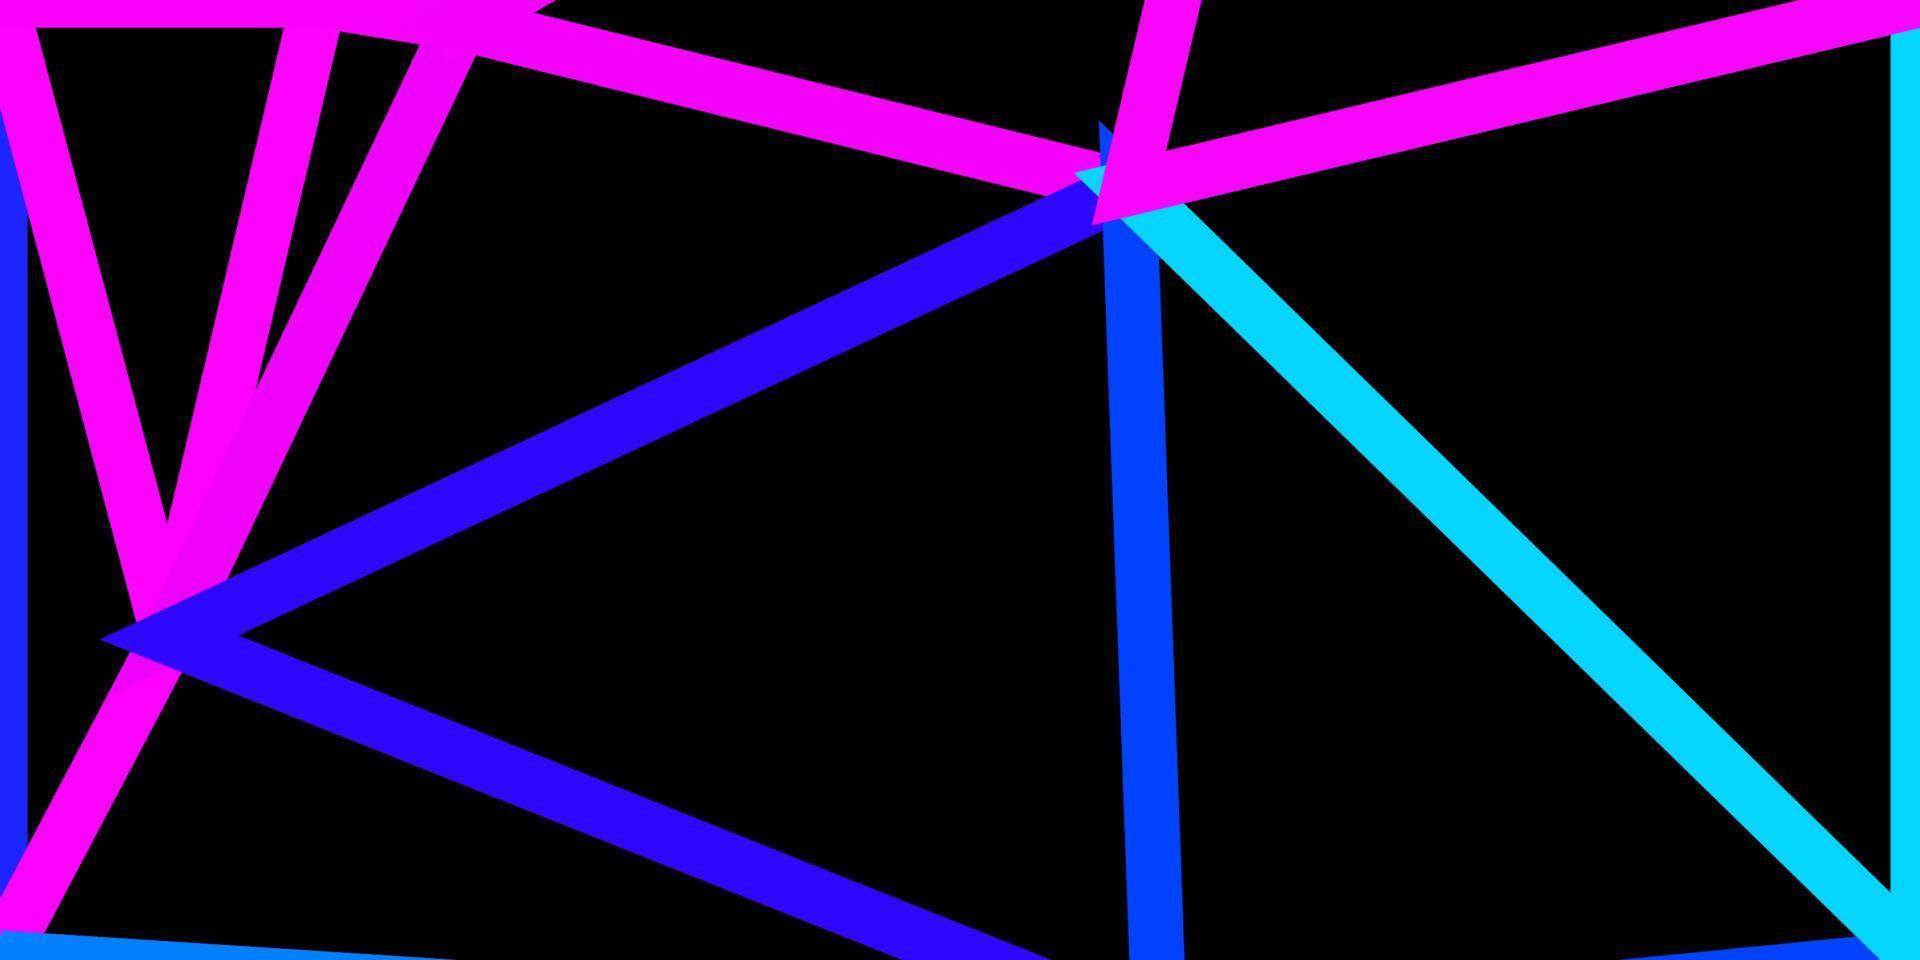 patrón de triángulo abstracto vector rosa claro, azul.